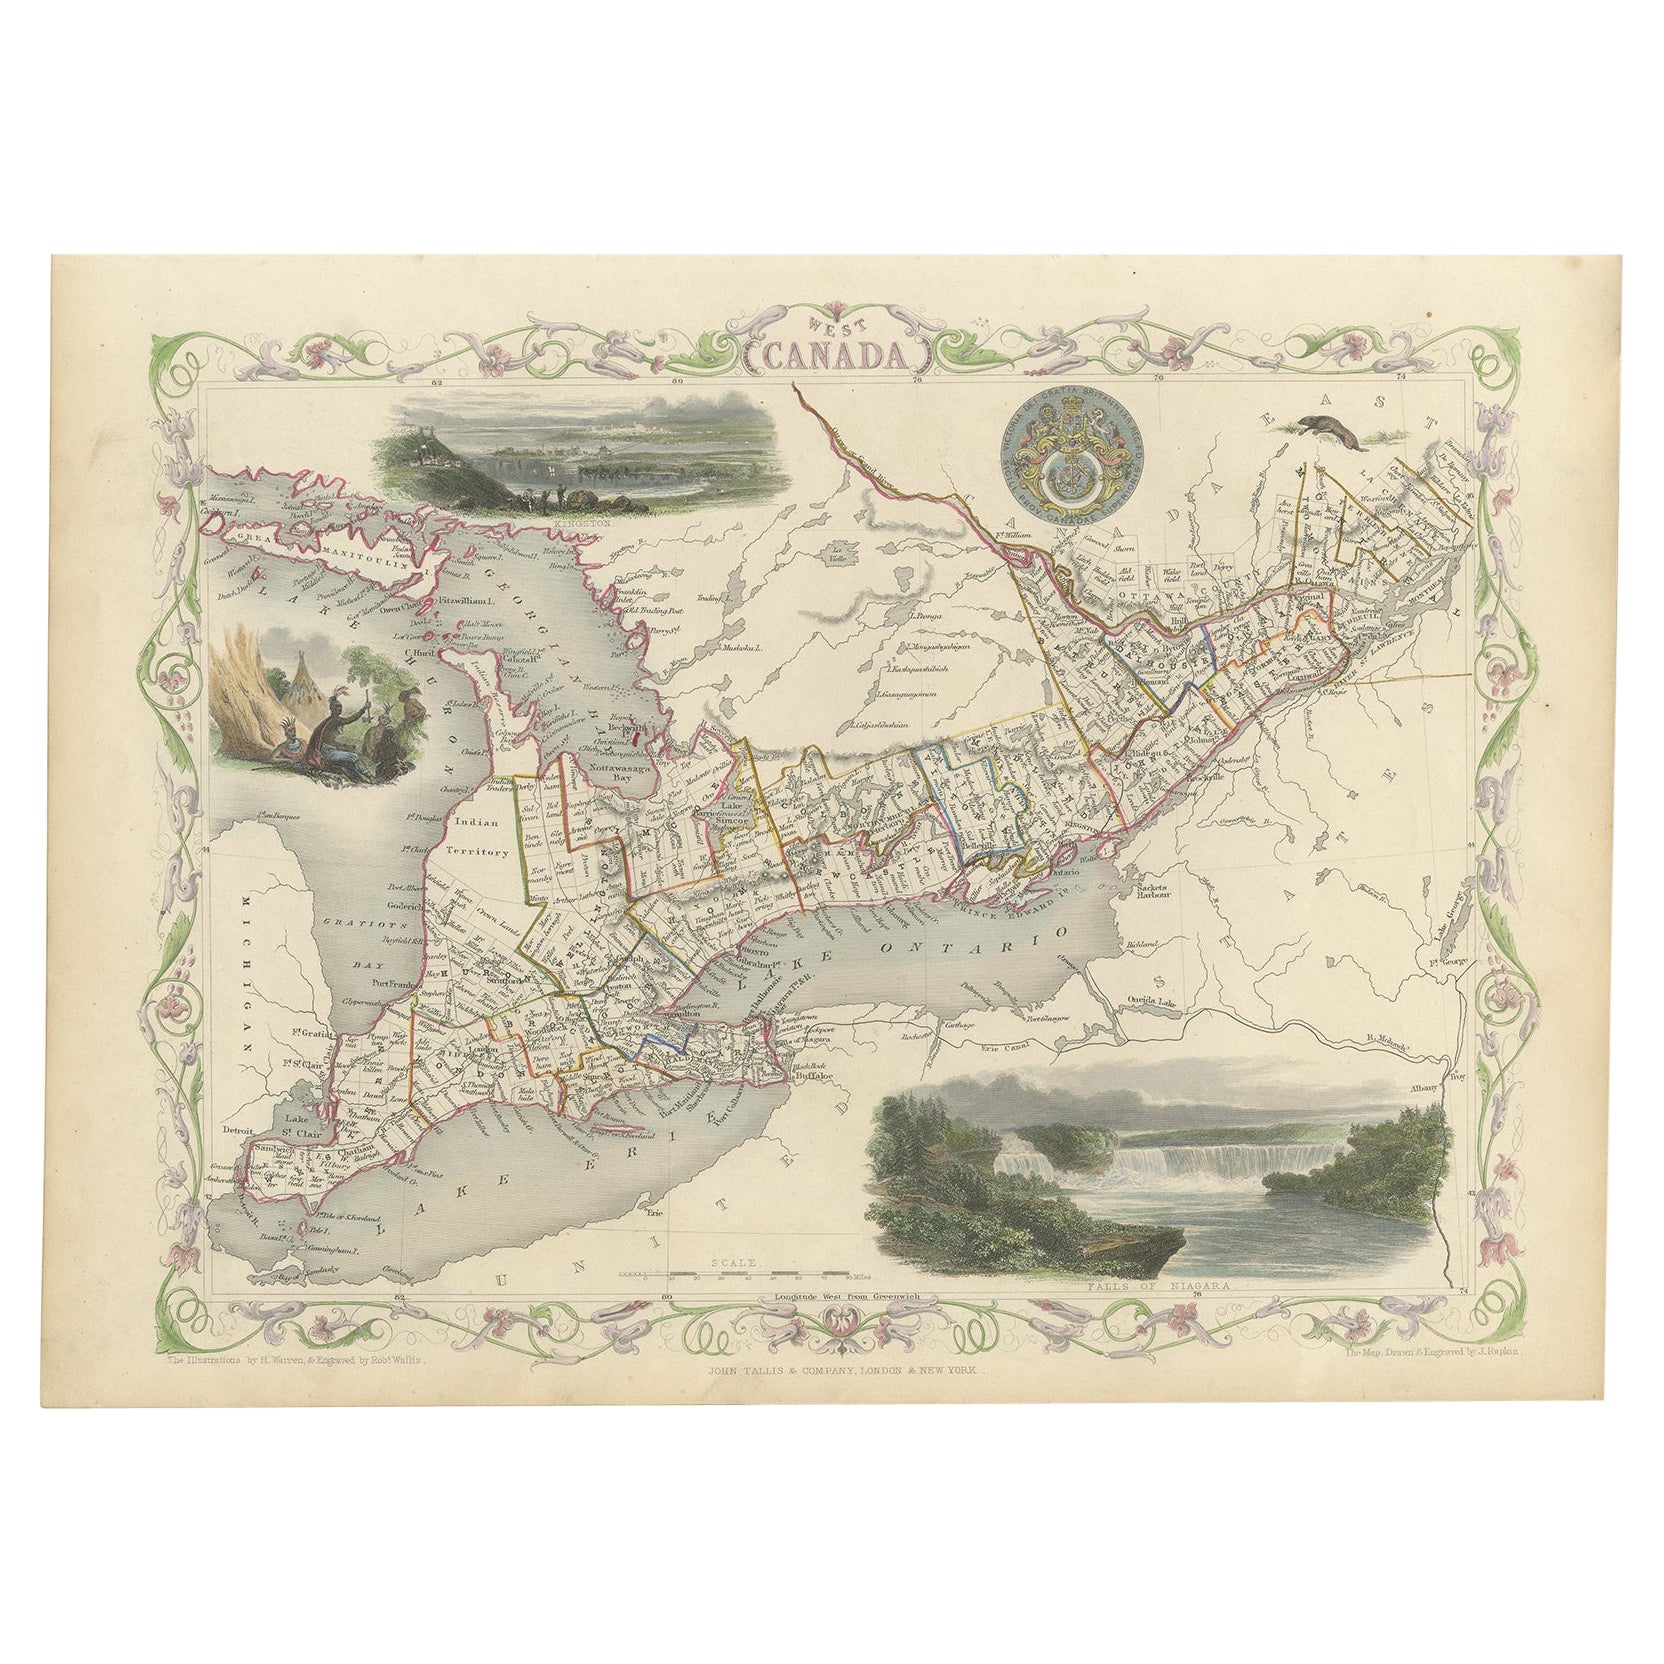 Magnifique carte décorative colorée à la main de l'Ouest du Canada, 1851